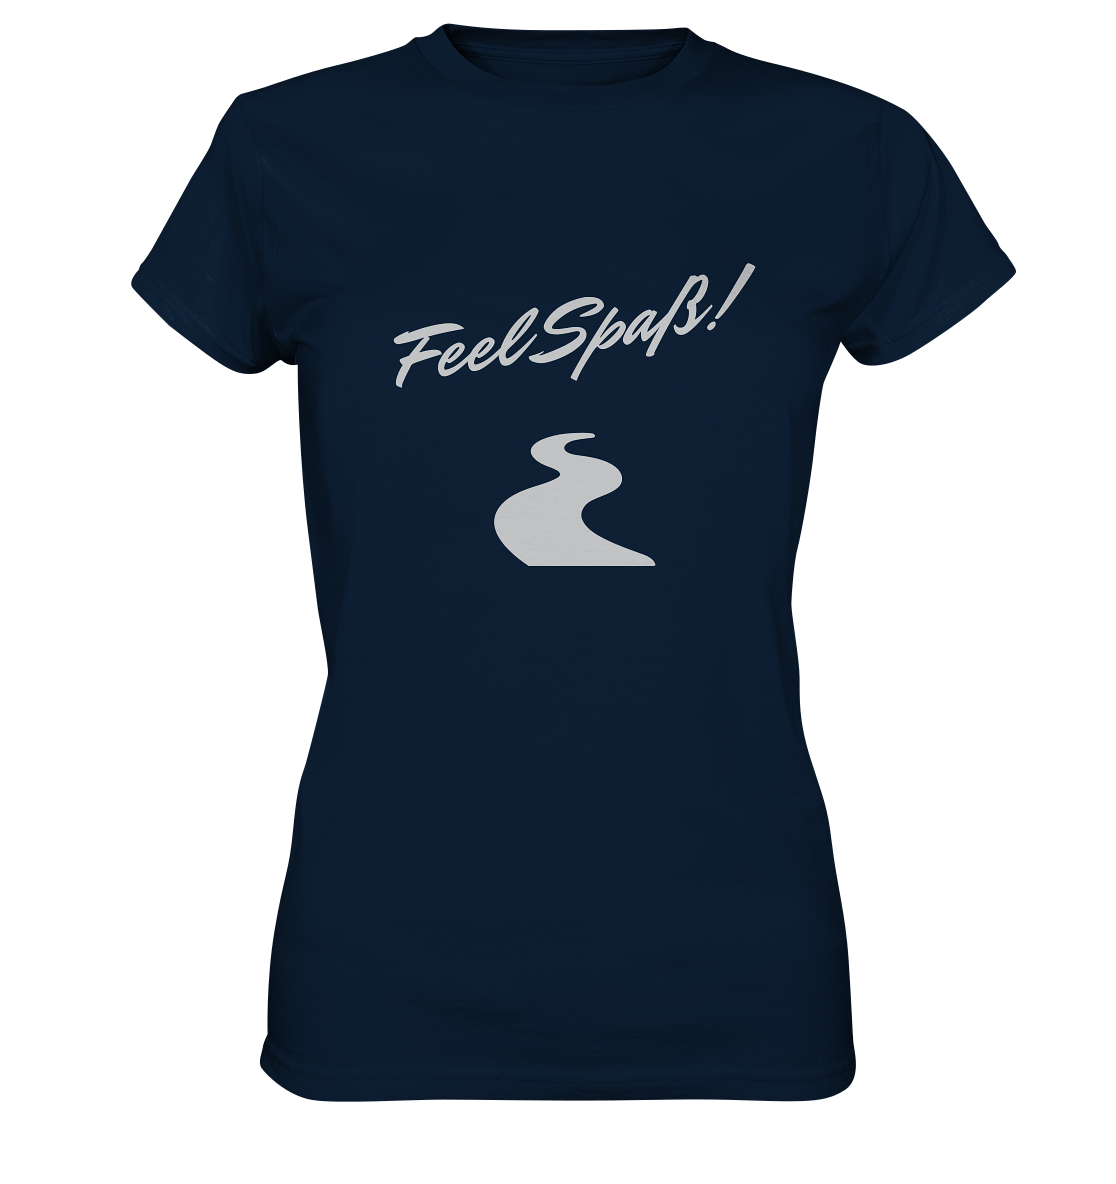 T-Shirt Damen, Rundhals, mit Aufdruck "Feel Spaß!" und kurviger Straße, dunkel blau